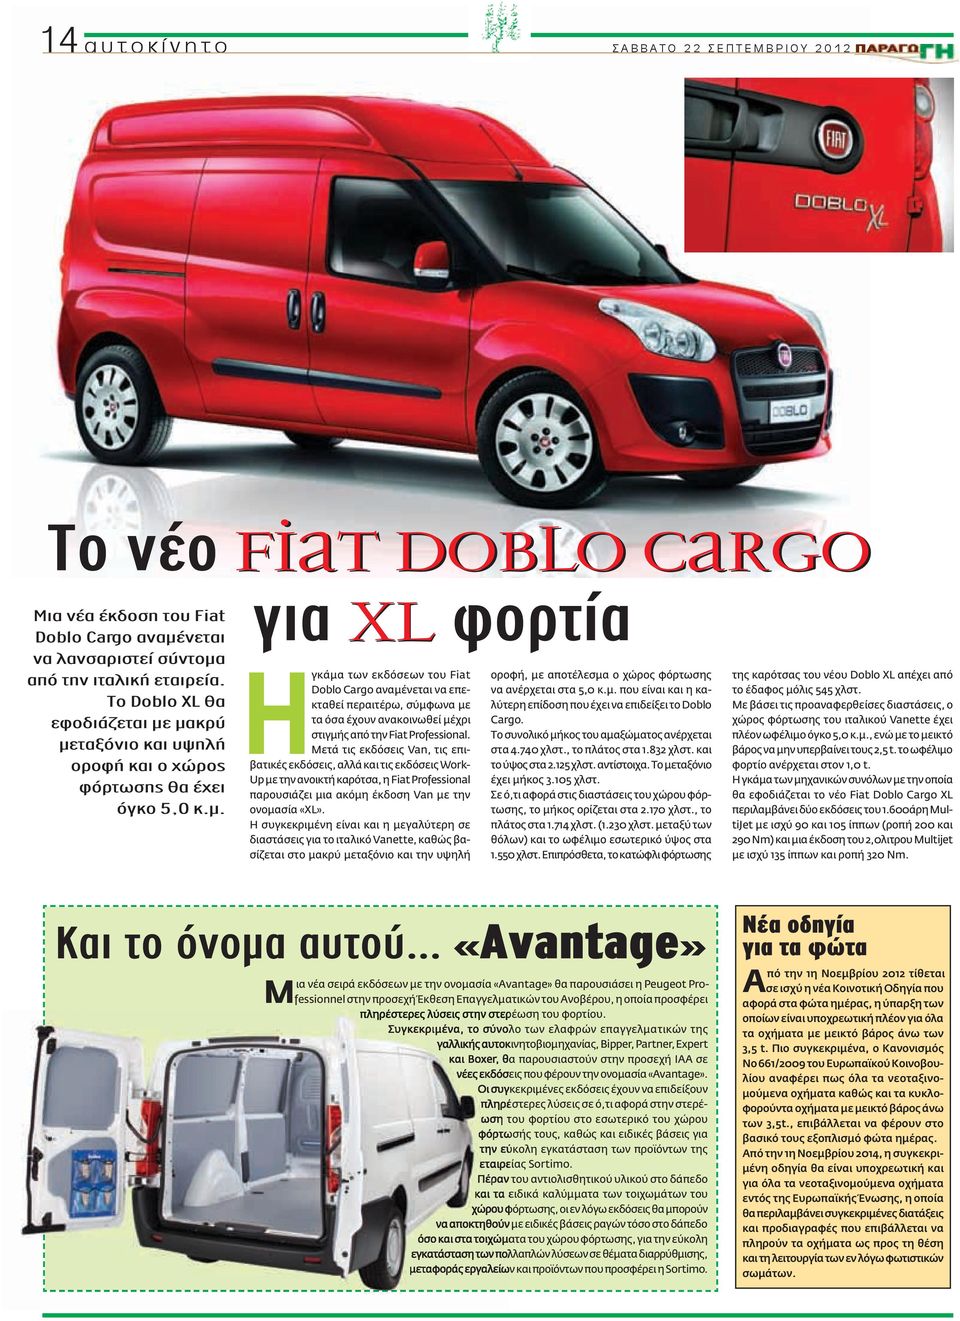 Μετά τις εκδόσεις Van, τις επιβατικές εκδόσεις, αλλά και τις εκδόσεις Work- Up με την ανοικτή καρότσα, η Fiat Professional παρουσιάζει μια ακόμη έκδοση Van με την ονομασία «XL».